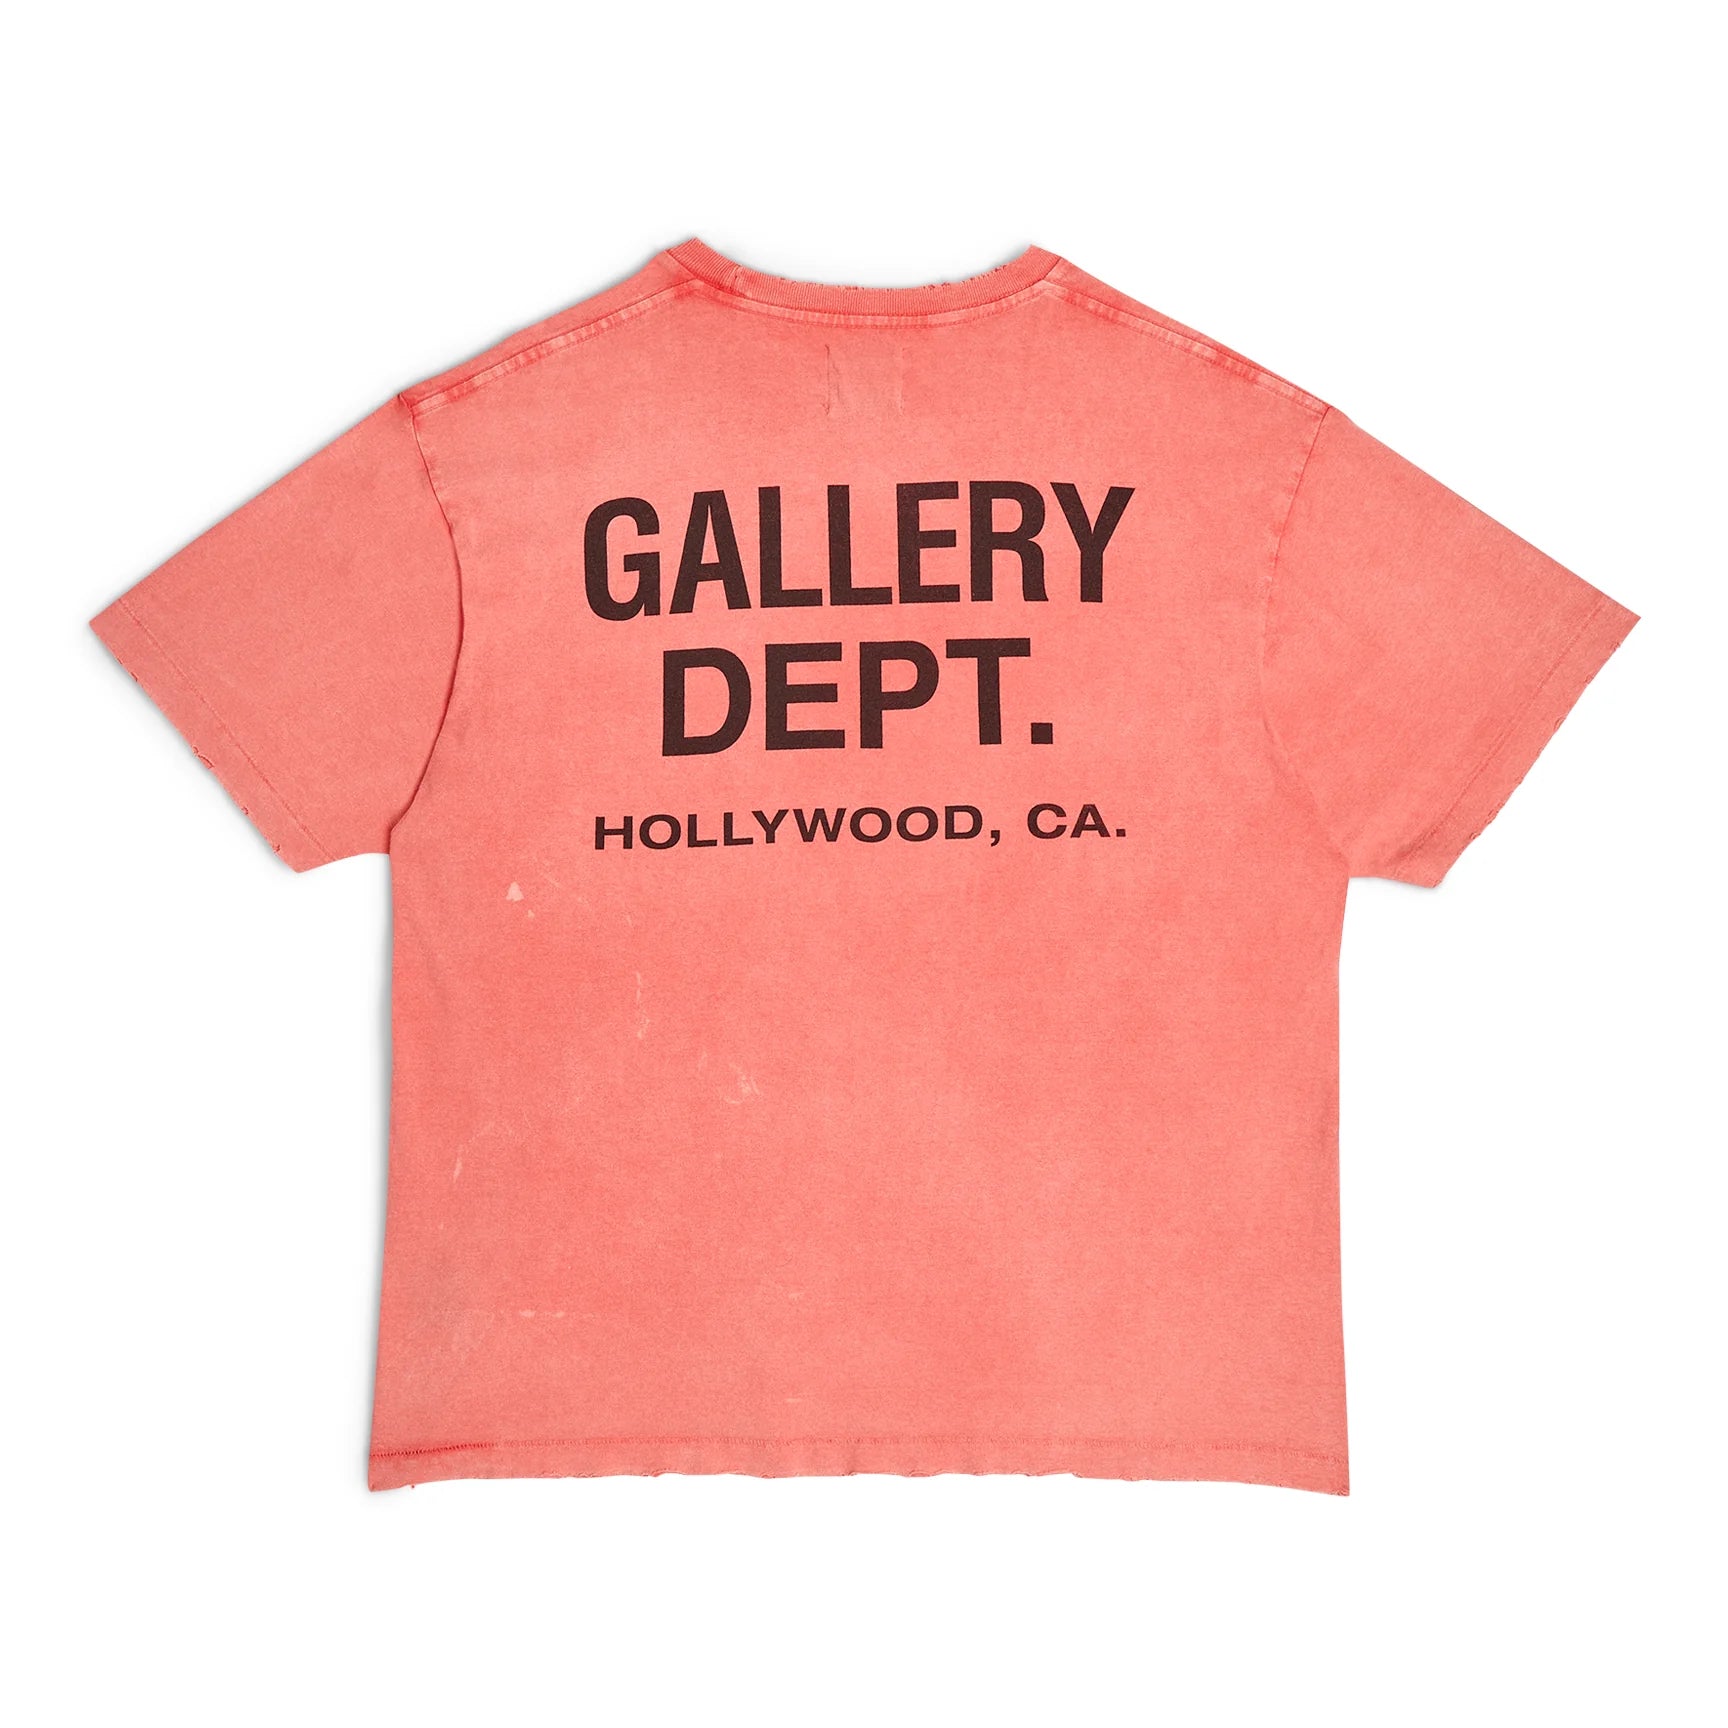 Gallery Dept. Plain Vintage Pocket T-Shirt Sun Wash Red